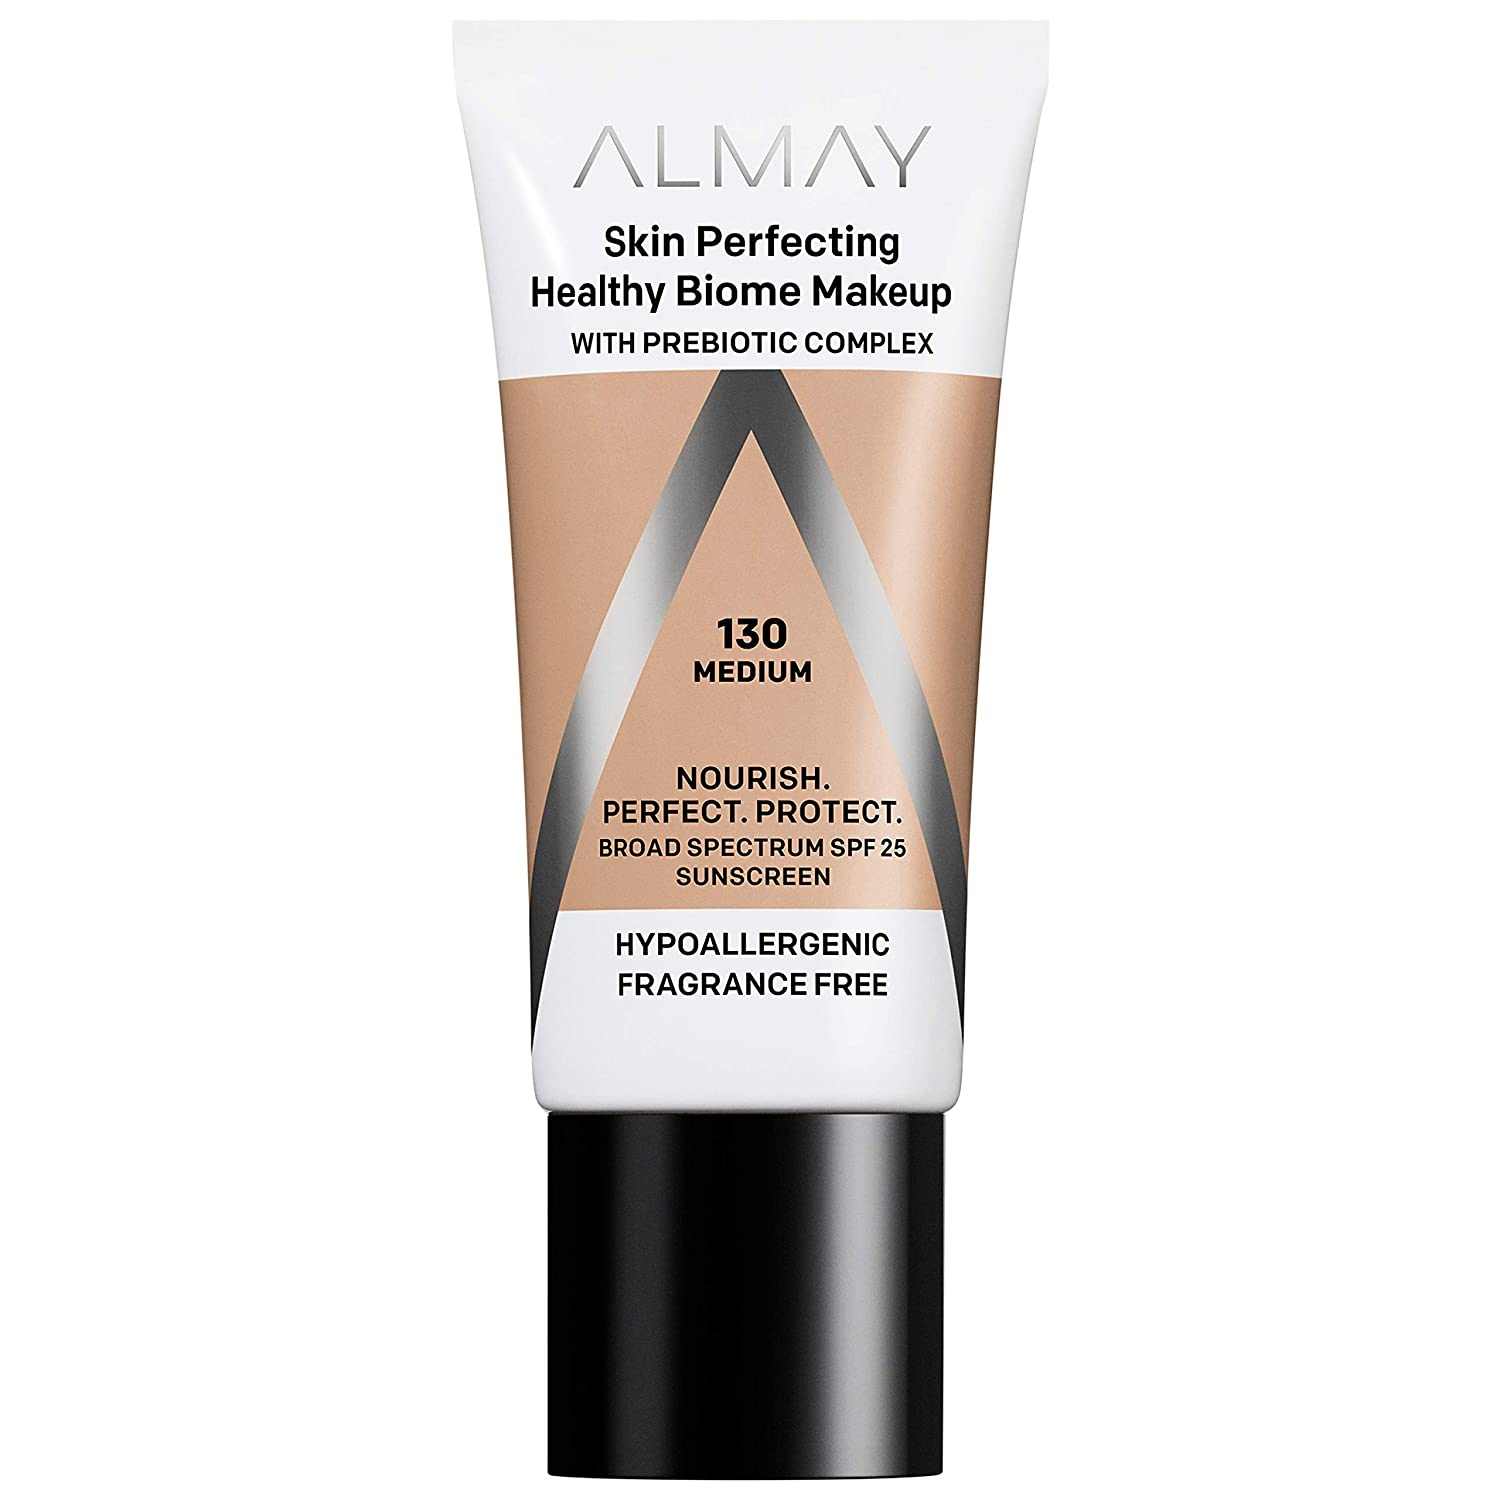 Almay Skin Perfecting Healthy Biome Makeup SPF 25 130 Medium